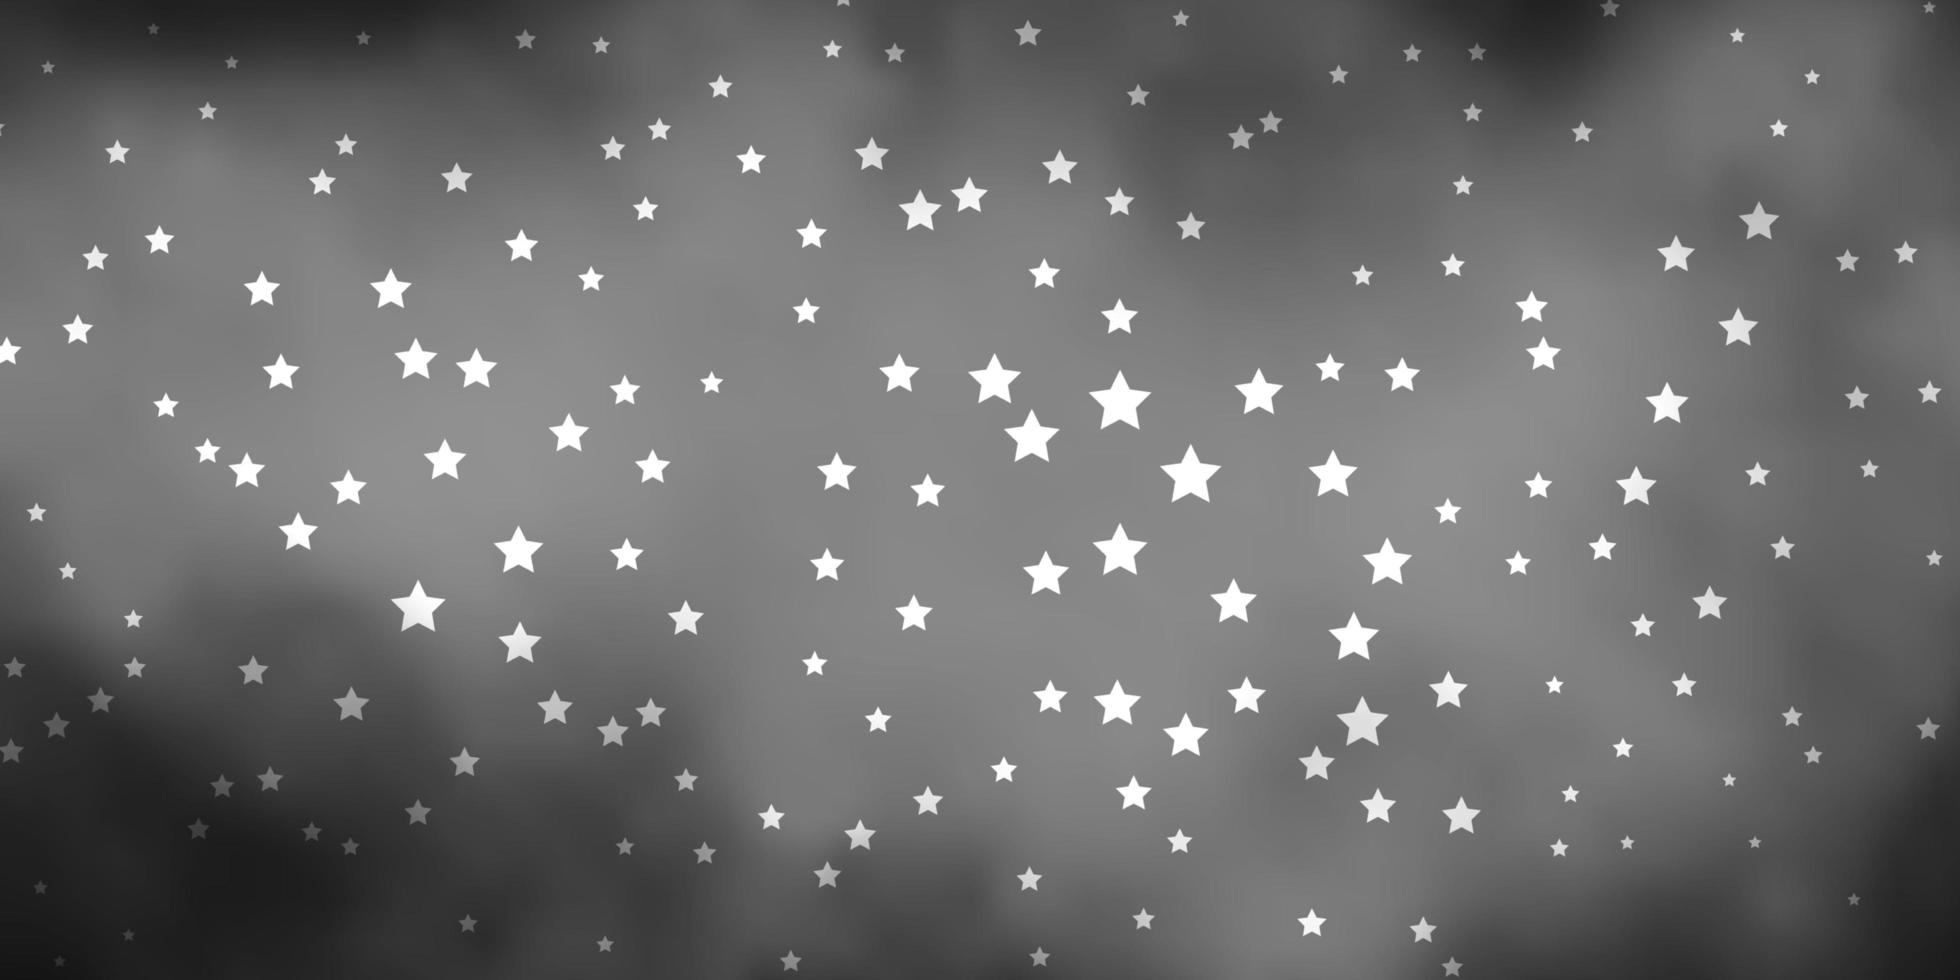 modelo de vetor cinza escuro com estrelas de néon ilustração colorida em estilo abstrato com design de estrelas gradientes para a promoção de seus negócios